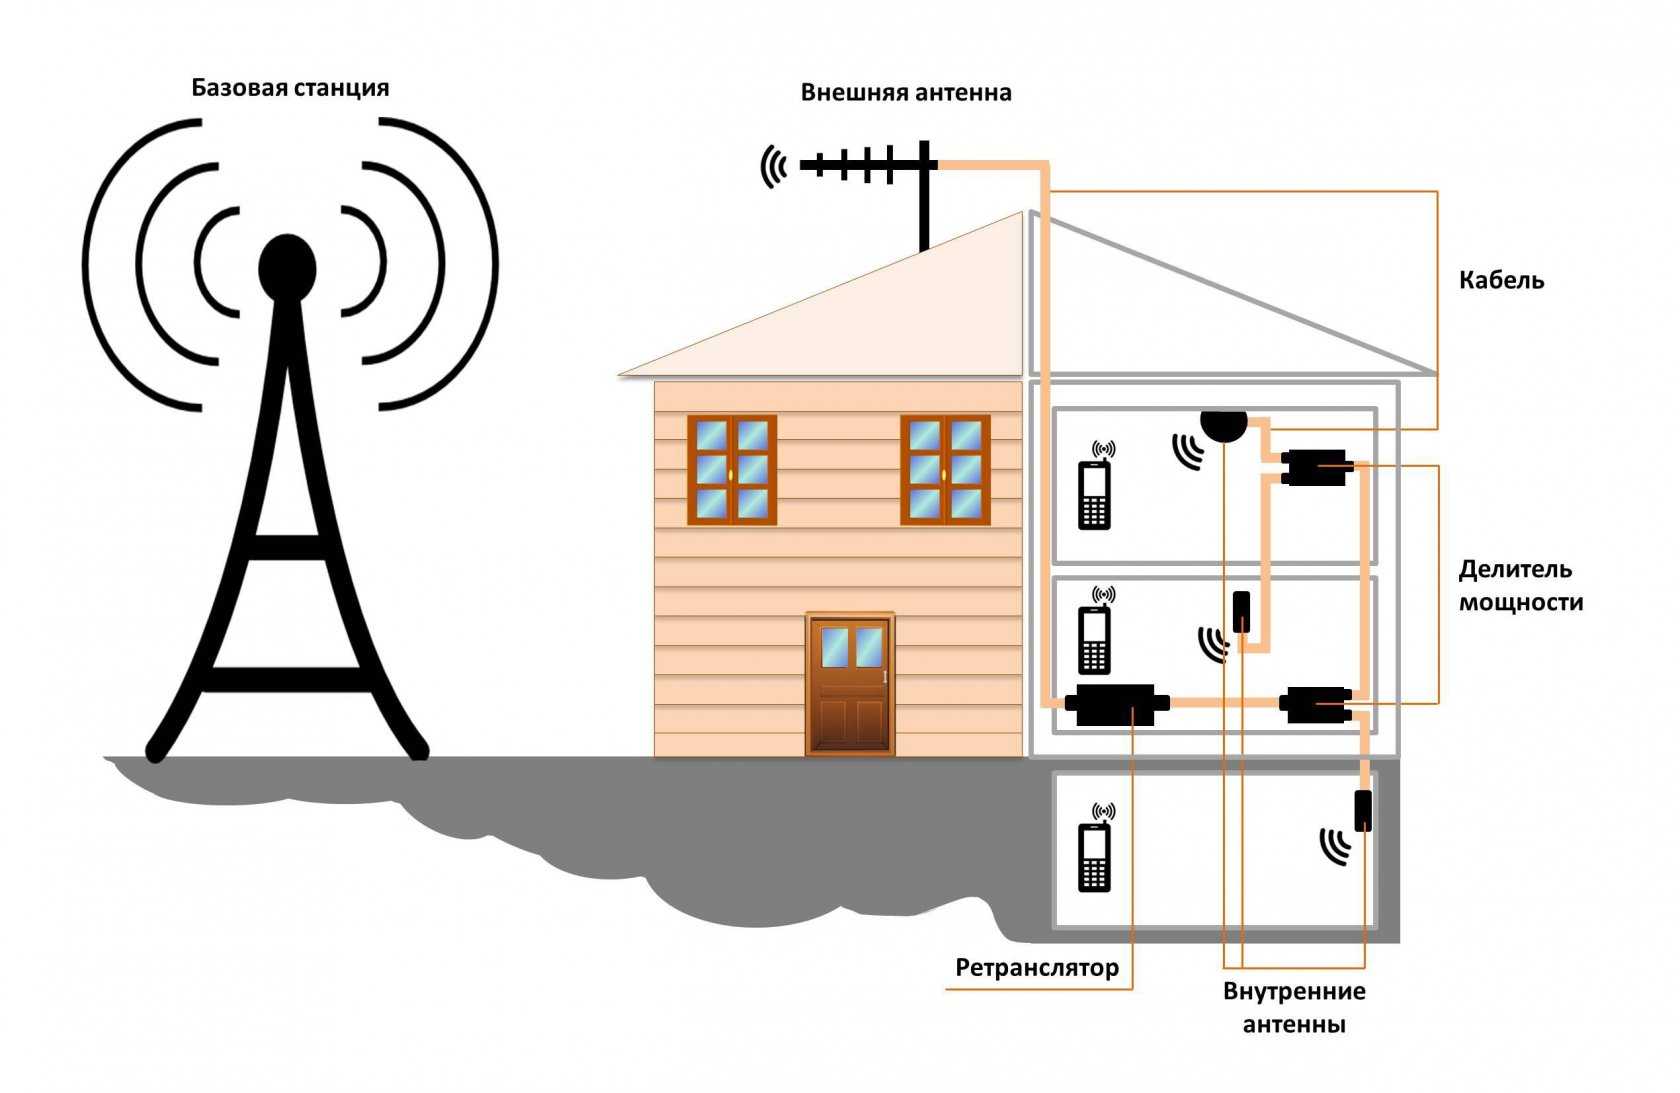 Усилитель сигнала сотовой связи и интернета мтс - как усилить сигнал 4g модема на даче